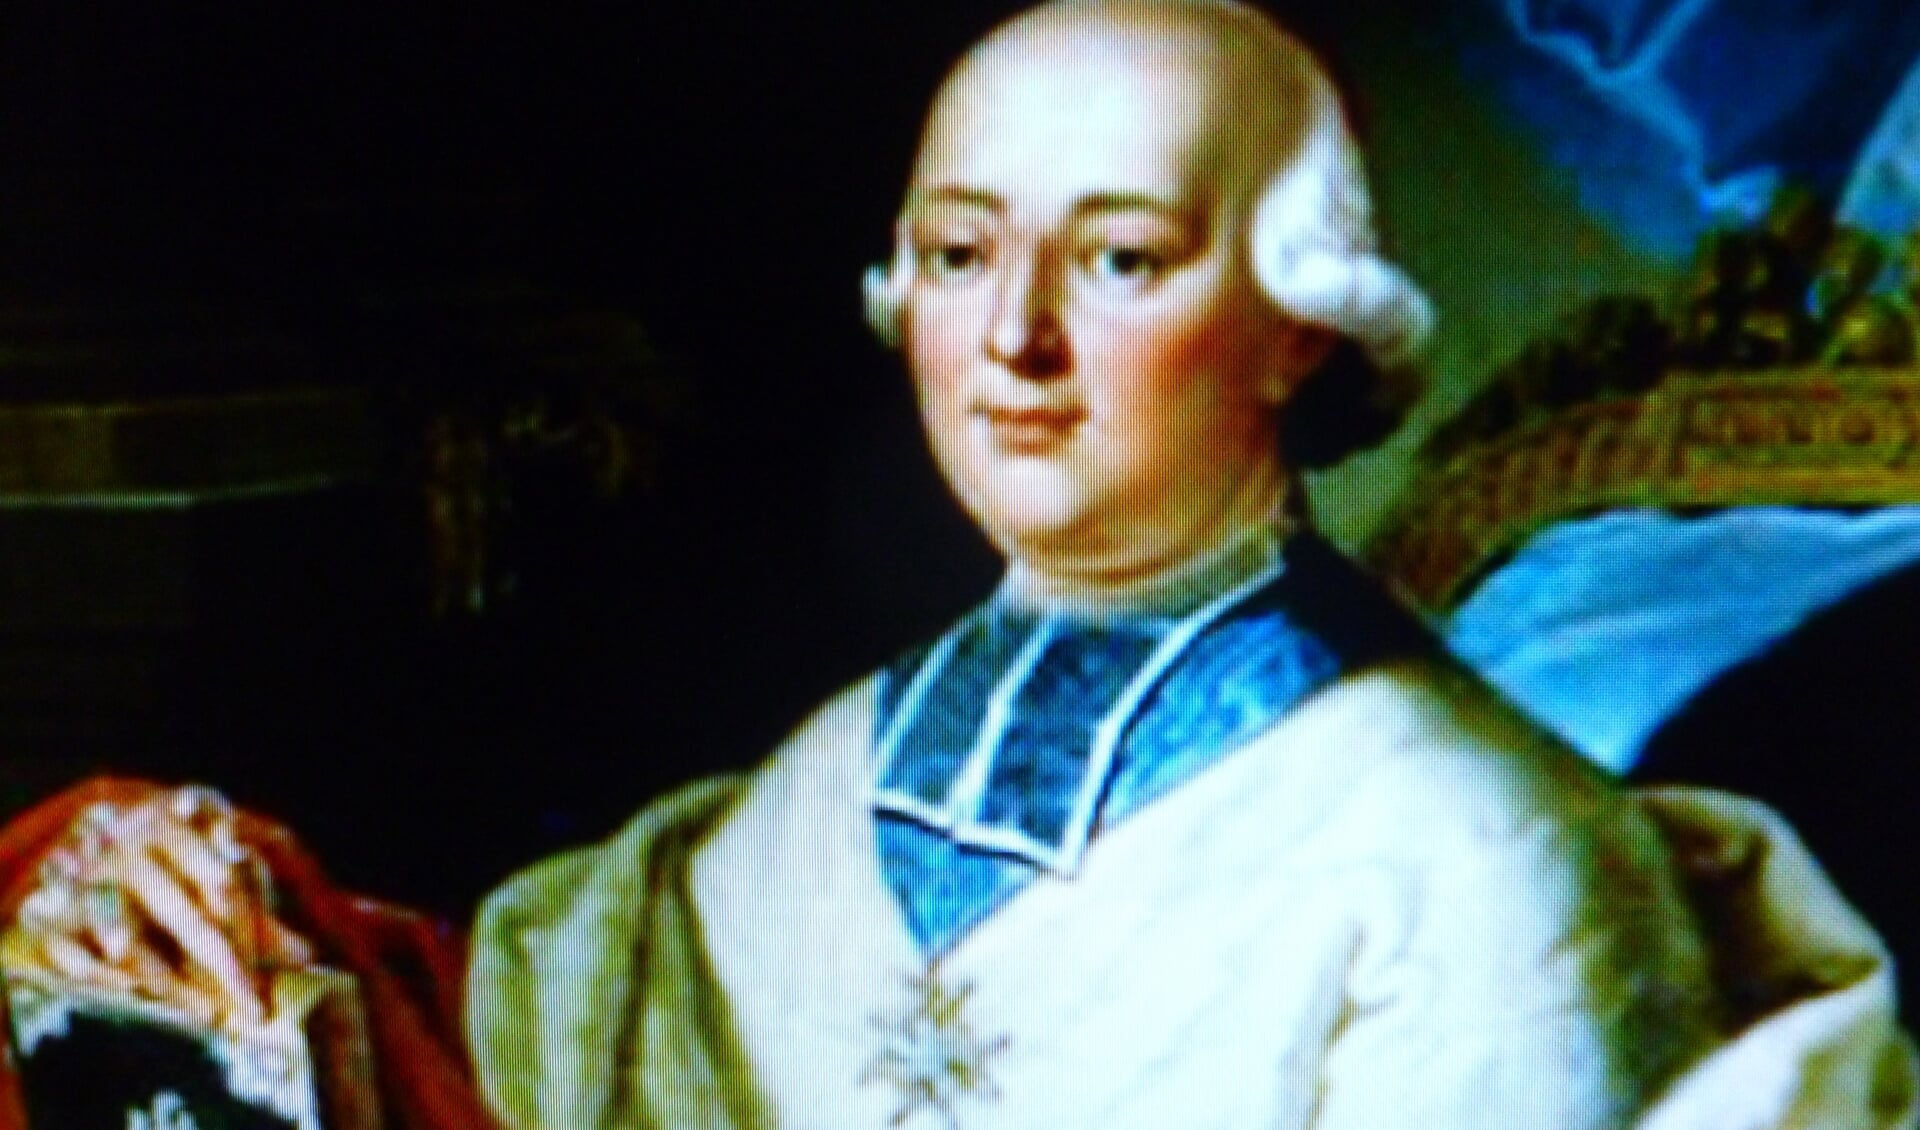 Kardinaal Louis René Edouard de Rohan